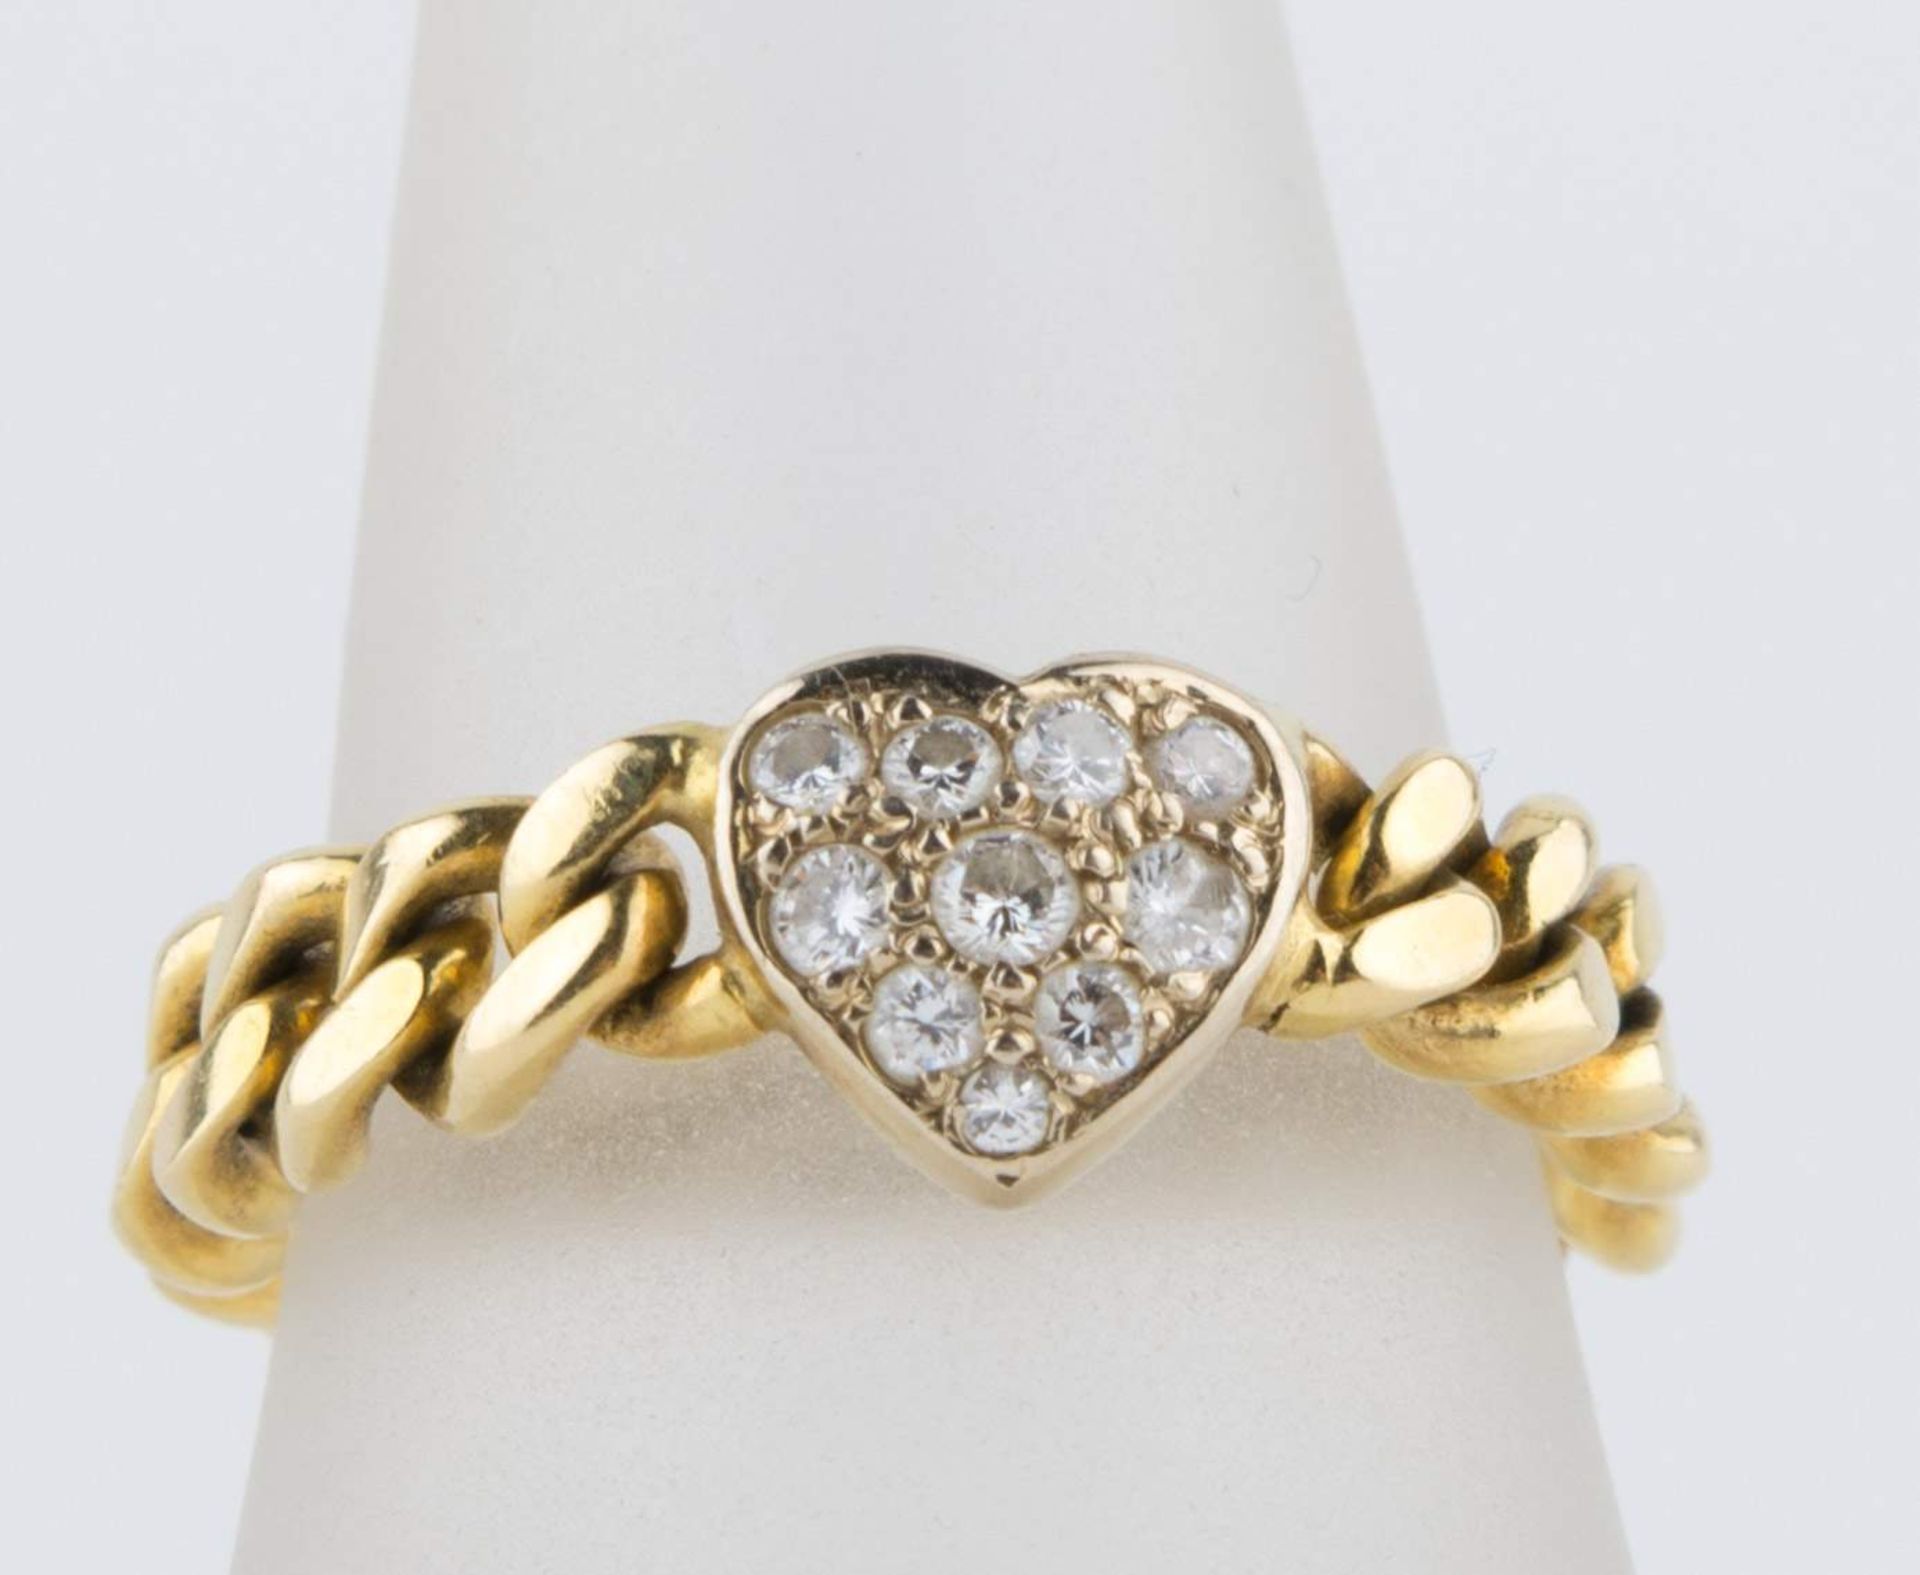 Damenkettenring / Woman´s necklace ring750 GG, mit Brilliantherz, 5,9 g. /
750 yellow gold, with - Bild 2 aus 2